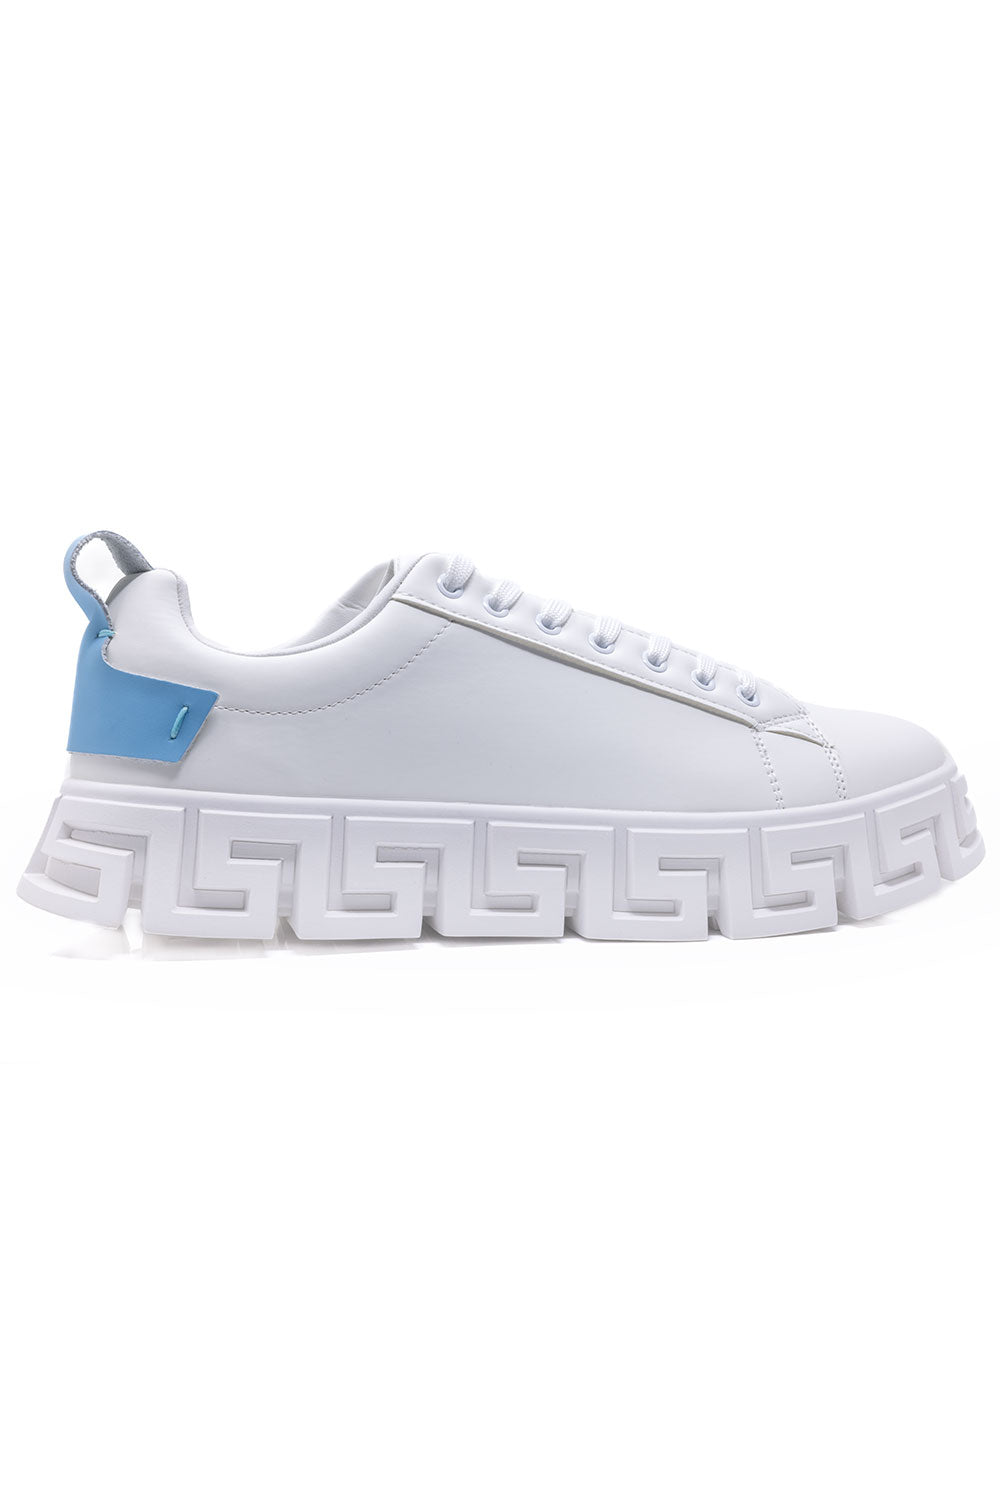 Barabas Men's Wholesale  Greek Key Sole Pattern Premium Sneakers 4SK06 Light Blue